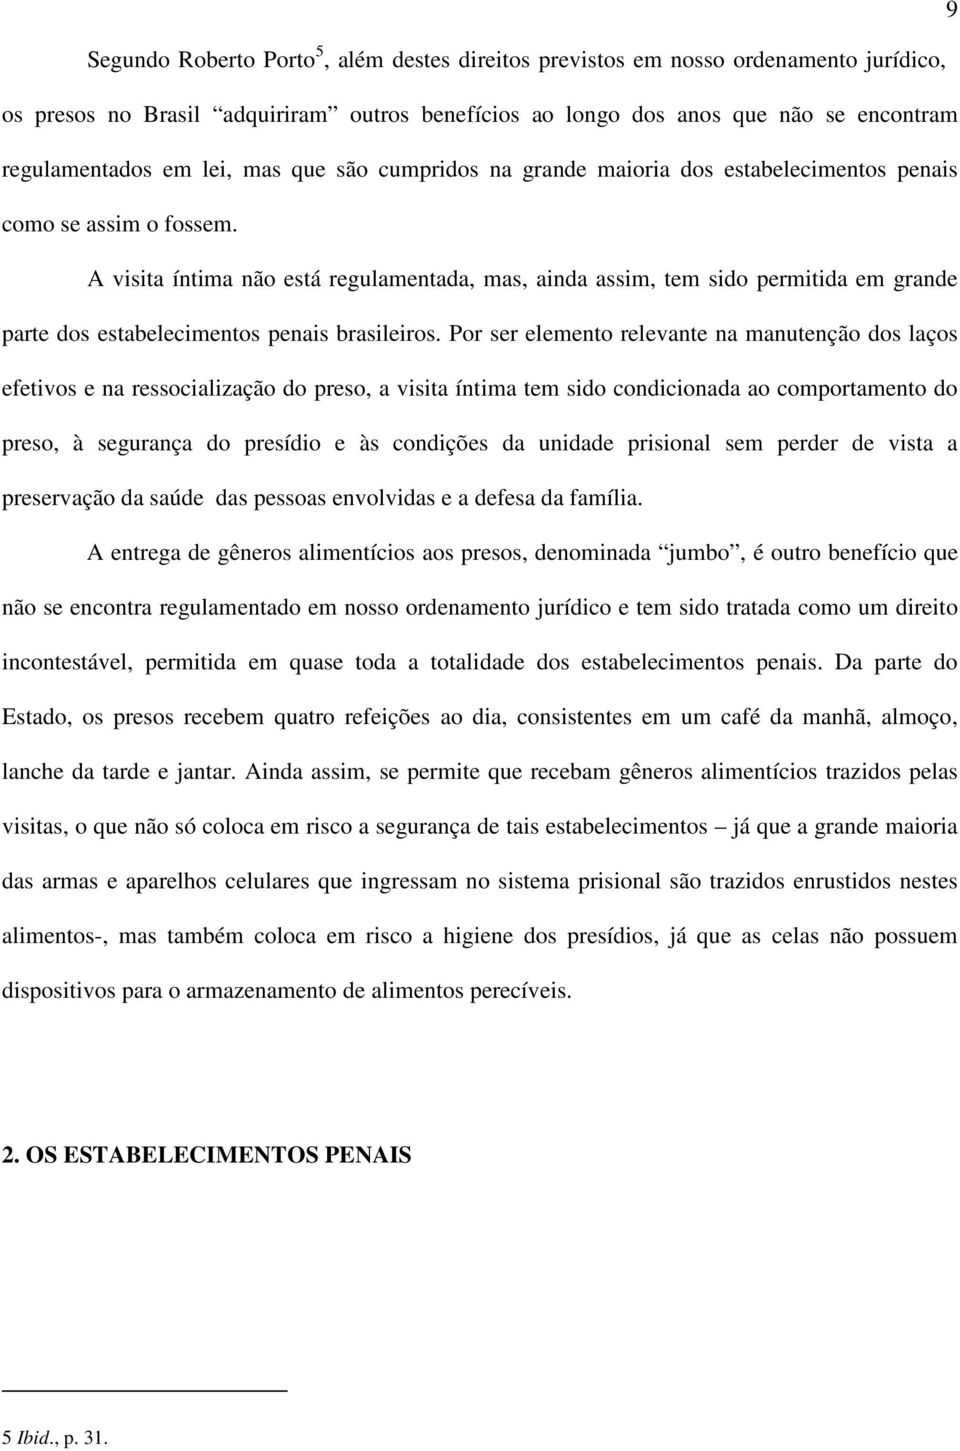 A visita íntima não está regulamentada, mas, ainda assim, tem sido permitida em grande parte dos estabelecimentos penais brasileiros.